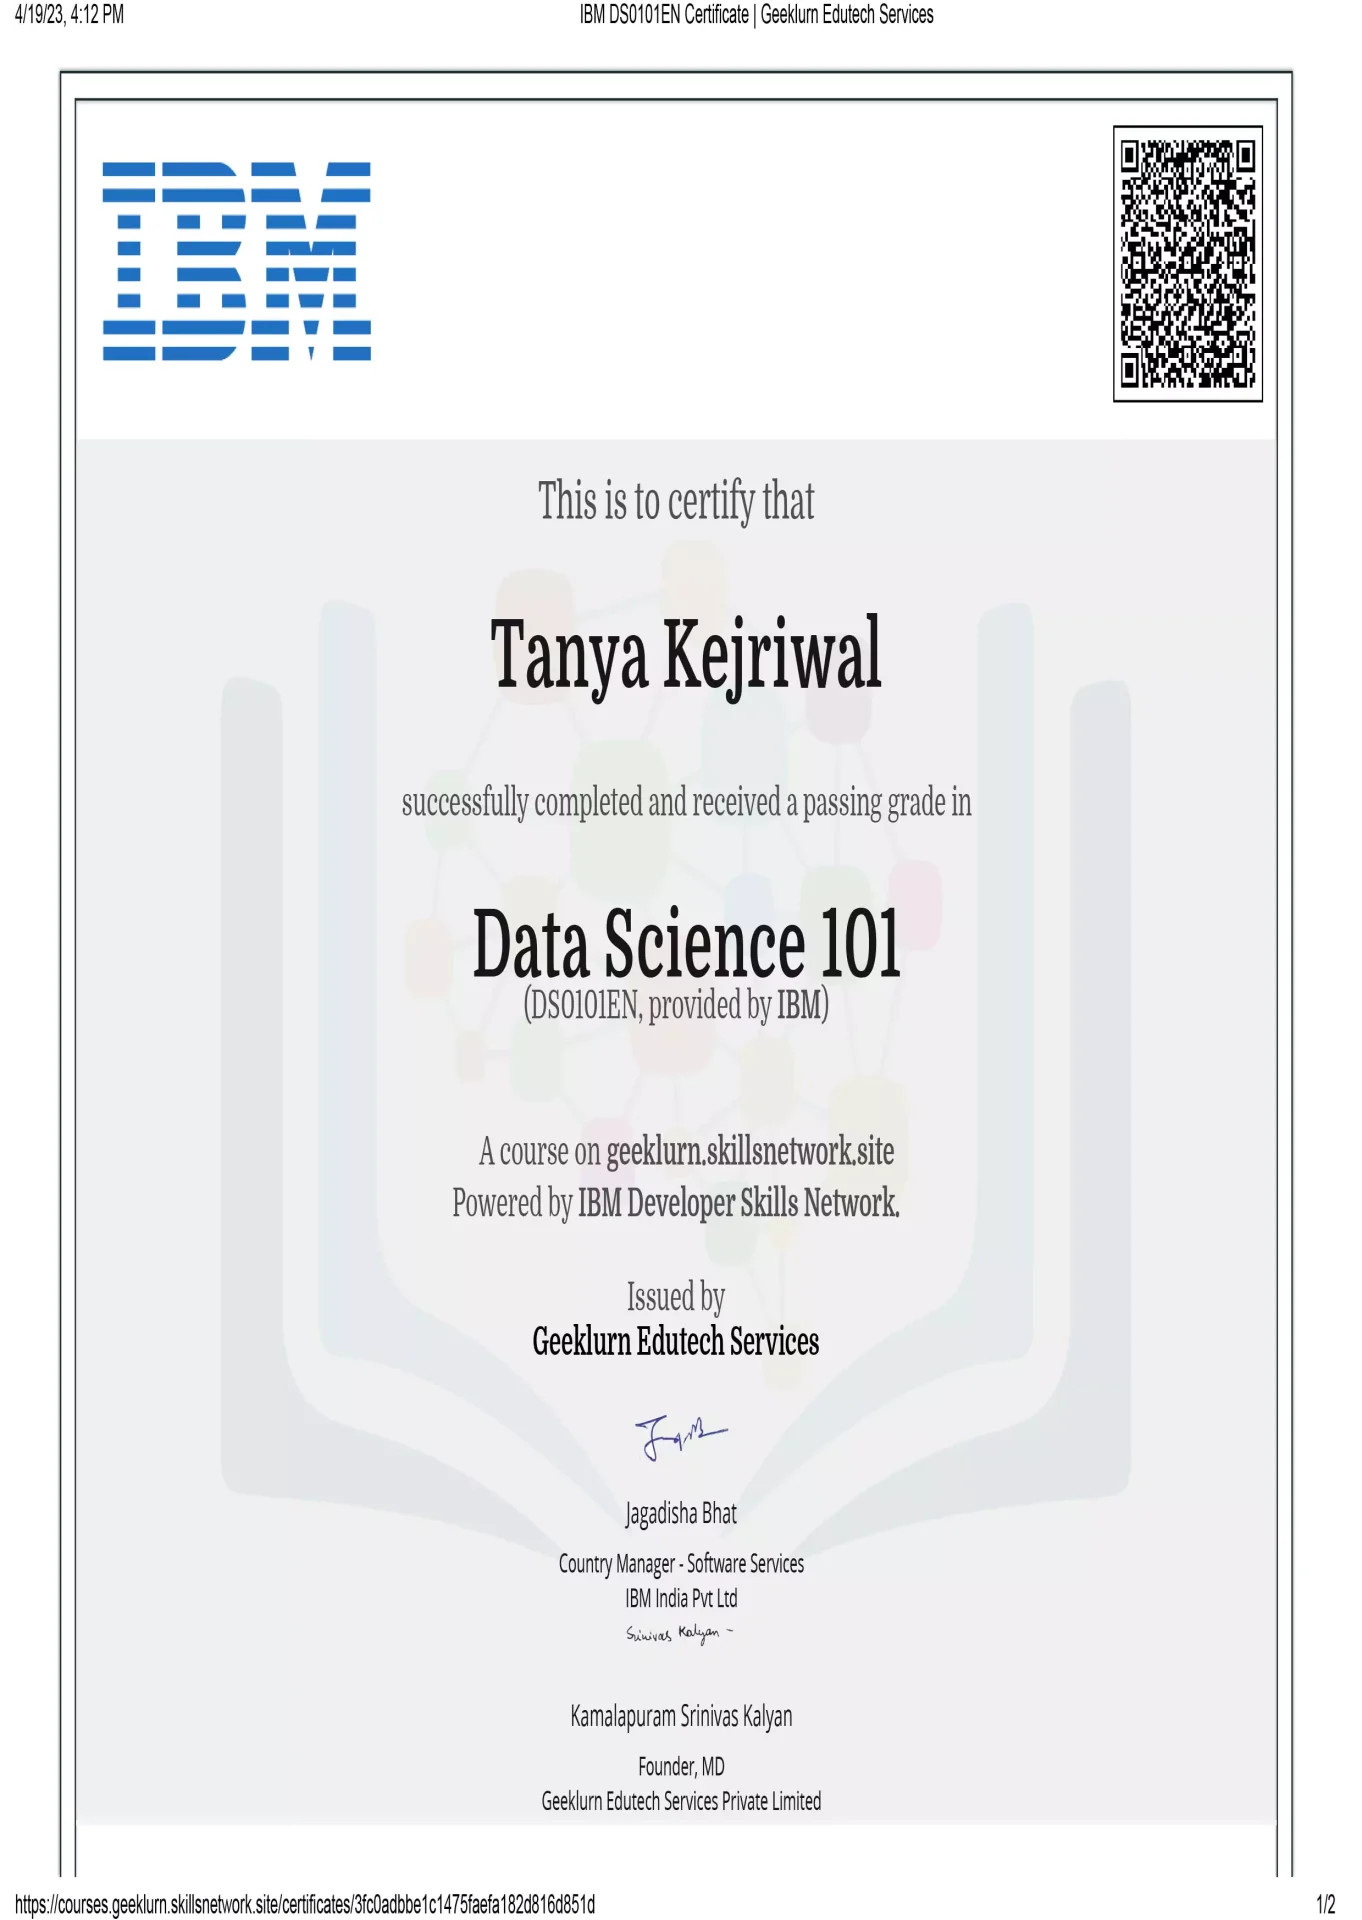 ibm-ds0101en-certificate-geeklurn-edutech-services-2